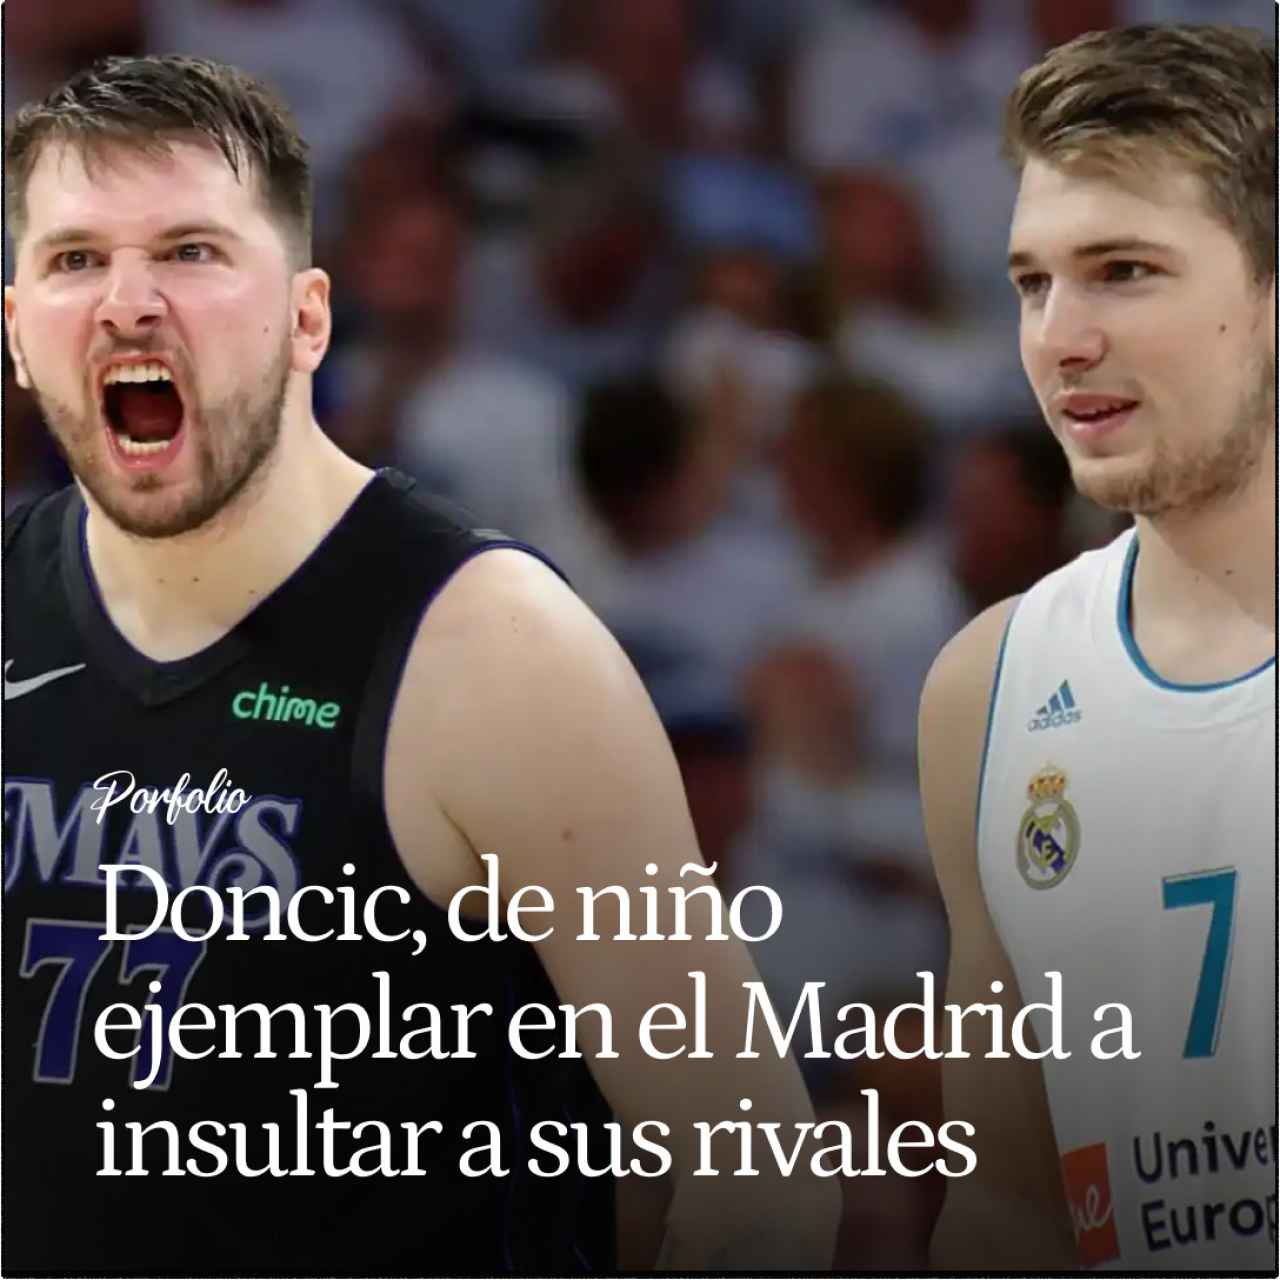 Luka Doncic, de niño ejemplar en el Real Madrid de baloncesto a genio que insulta a sus rivales en la NBA